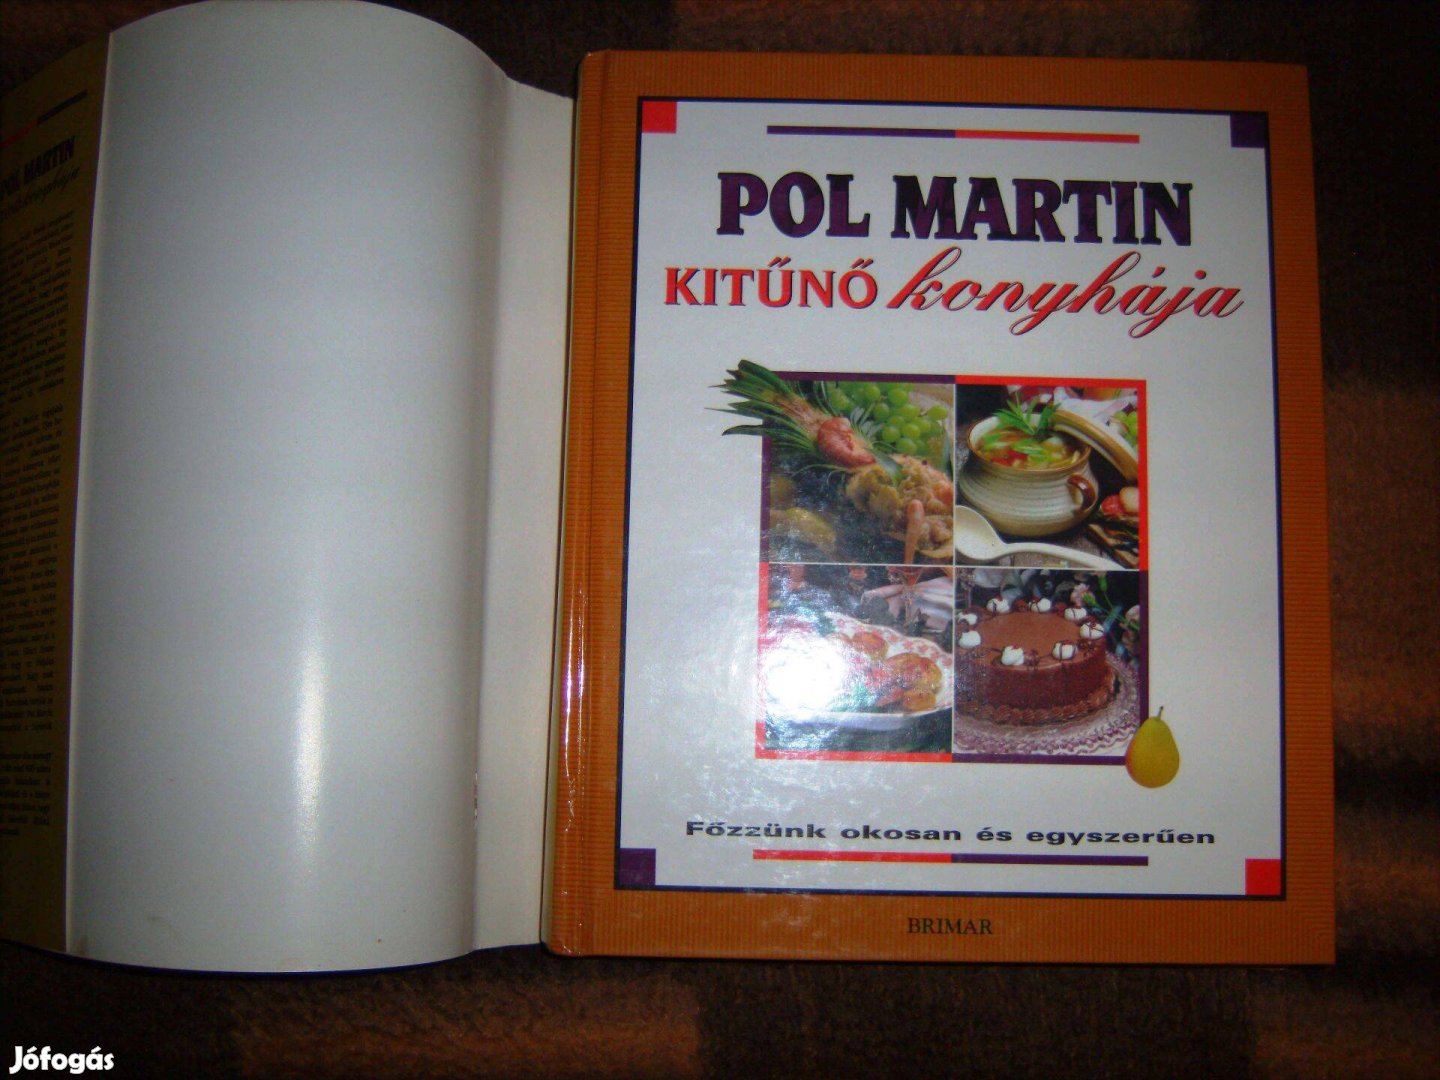 "POL Martin Kitűnő konyhája" csodás, nagy szakácskönyv, ajándéknak is